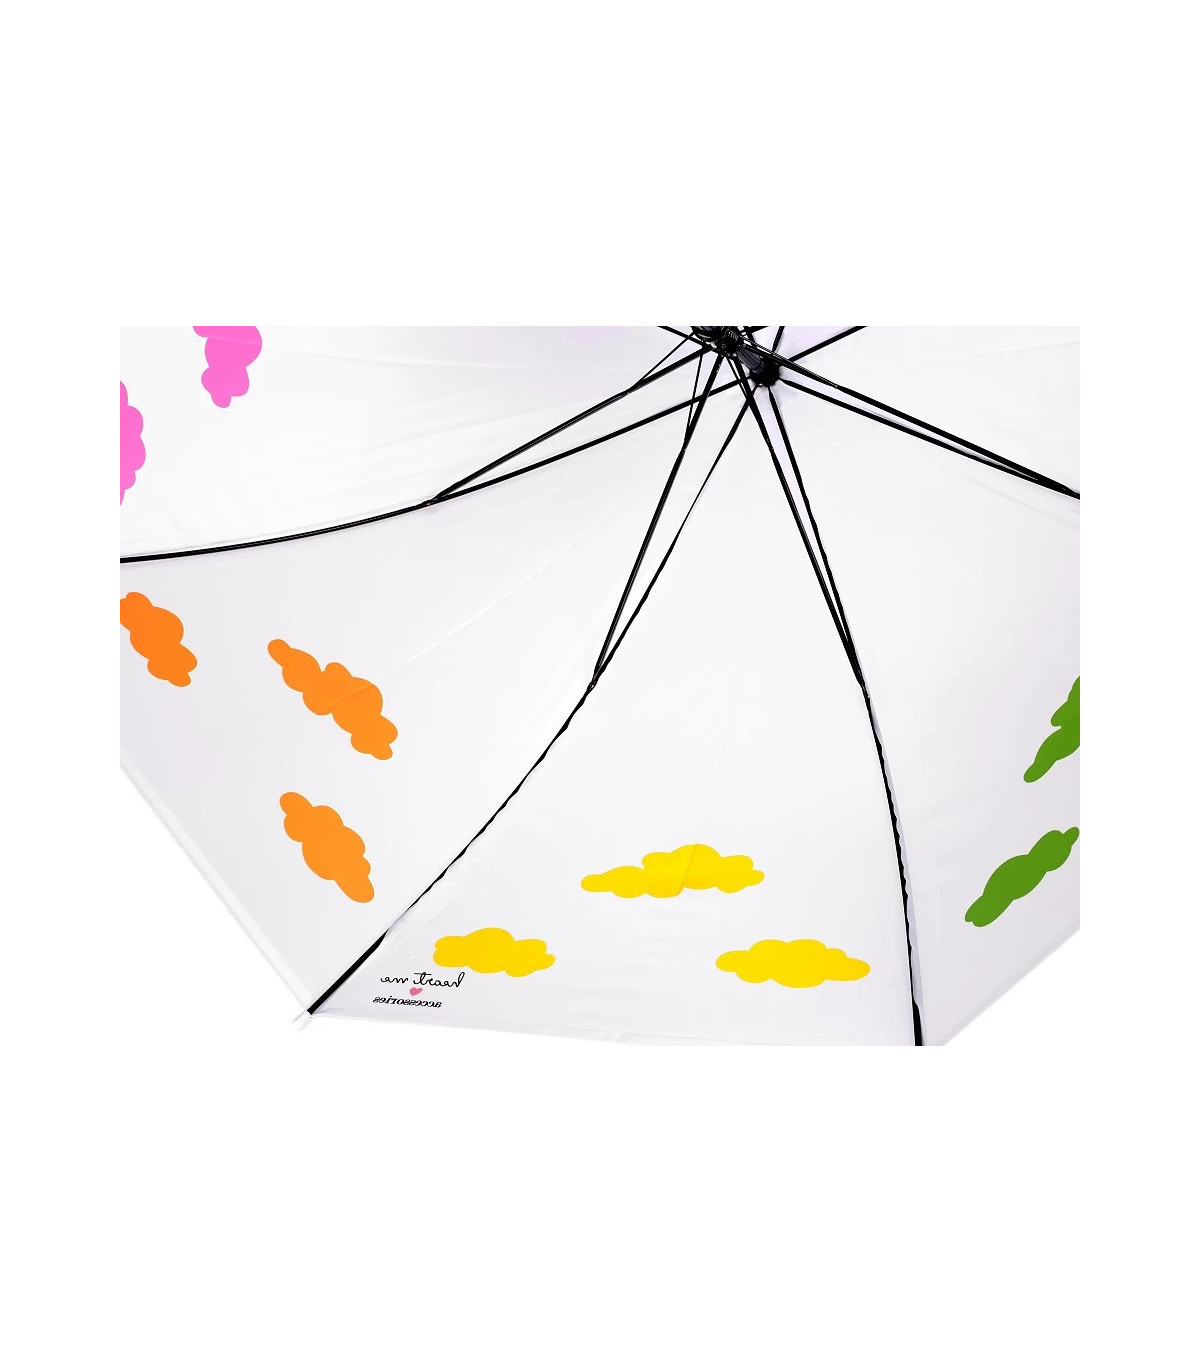 Paraguas de mujer con efecto único de nubes mágicas Paraguas - Materiales para tocados, Canotiers, Flores de porcel